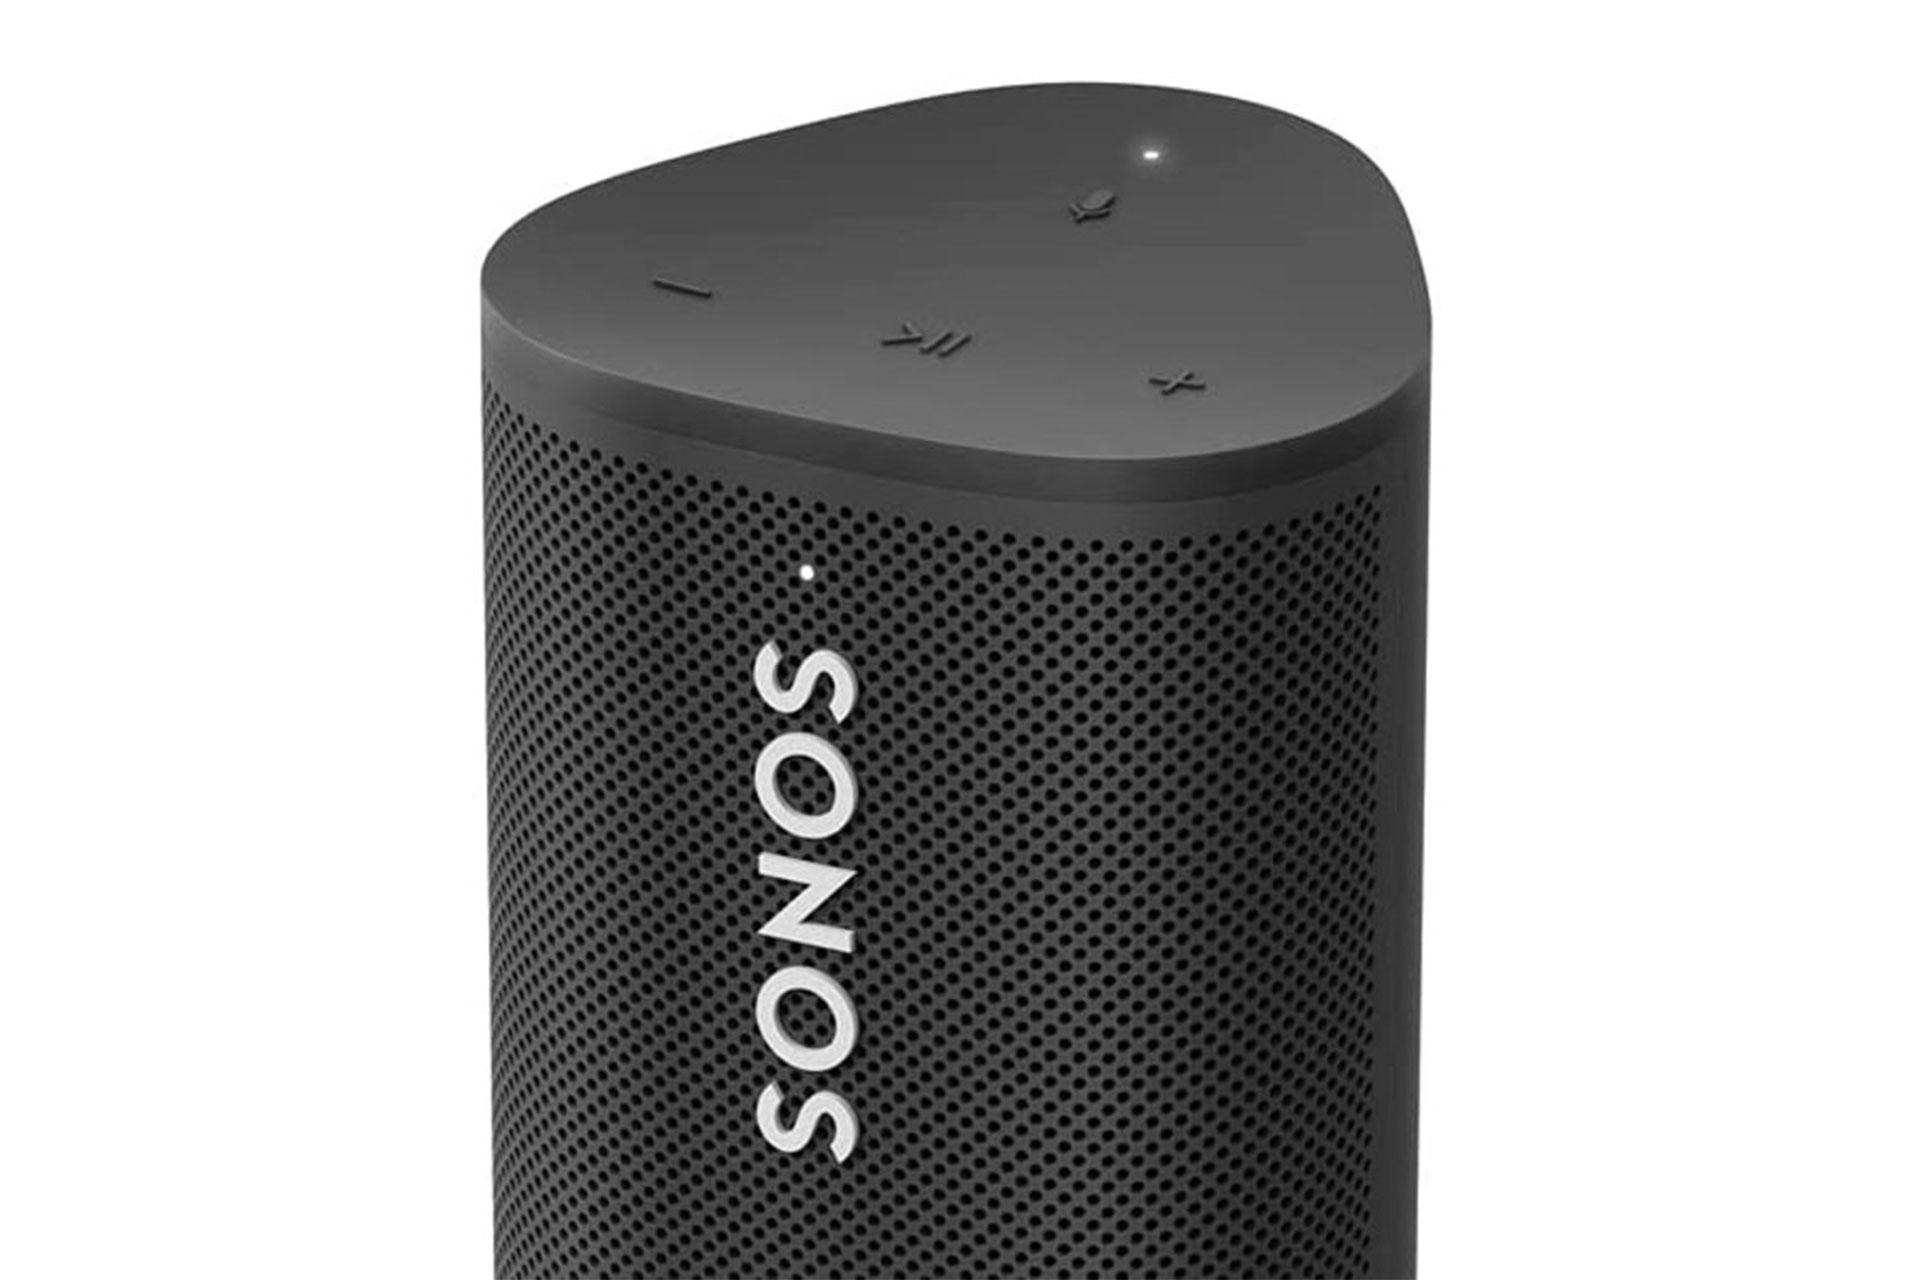 Sonos Roam ソノス ローム Portable Speaker ポータブルスピーカー